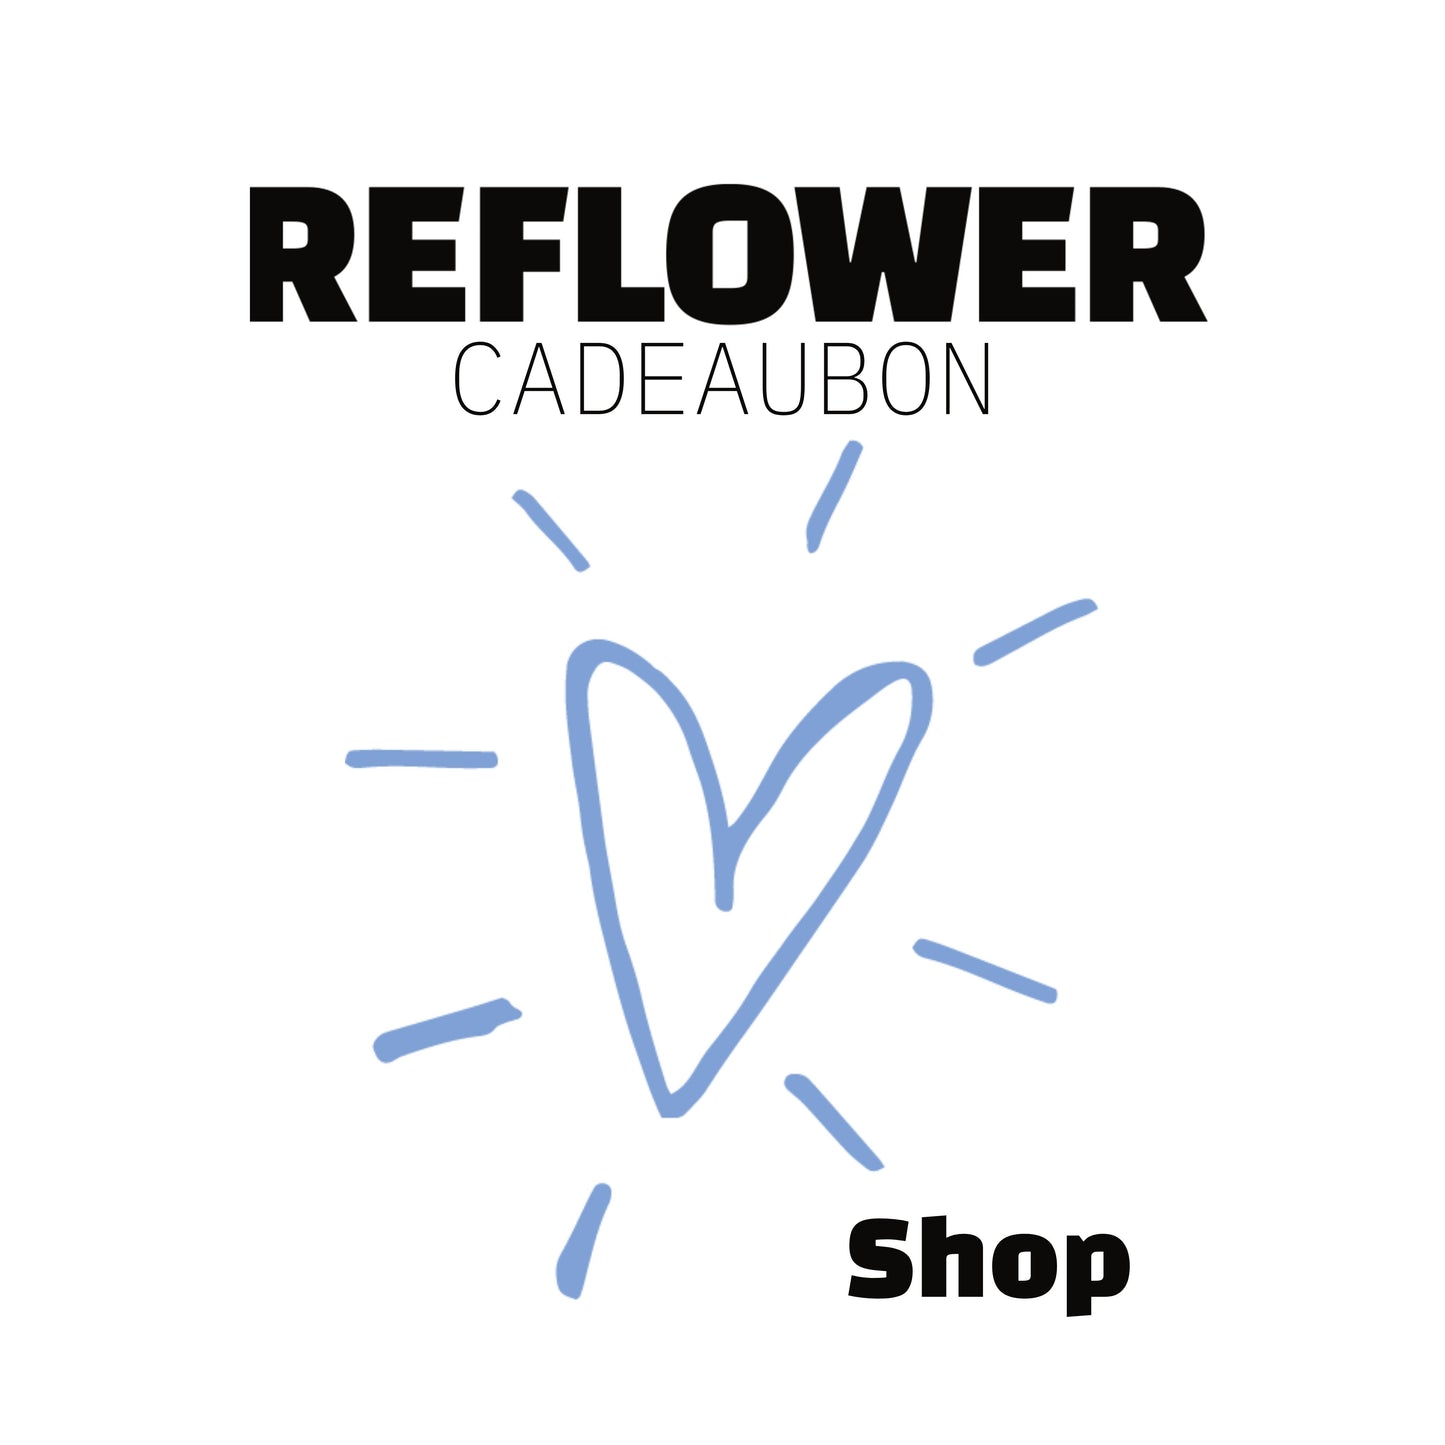 Reflower Cadeaubon